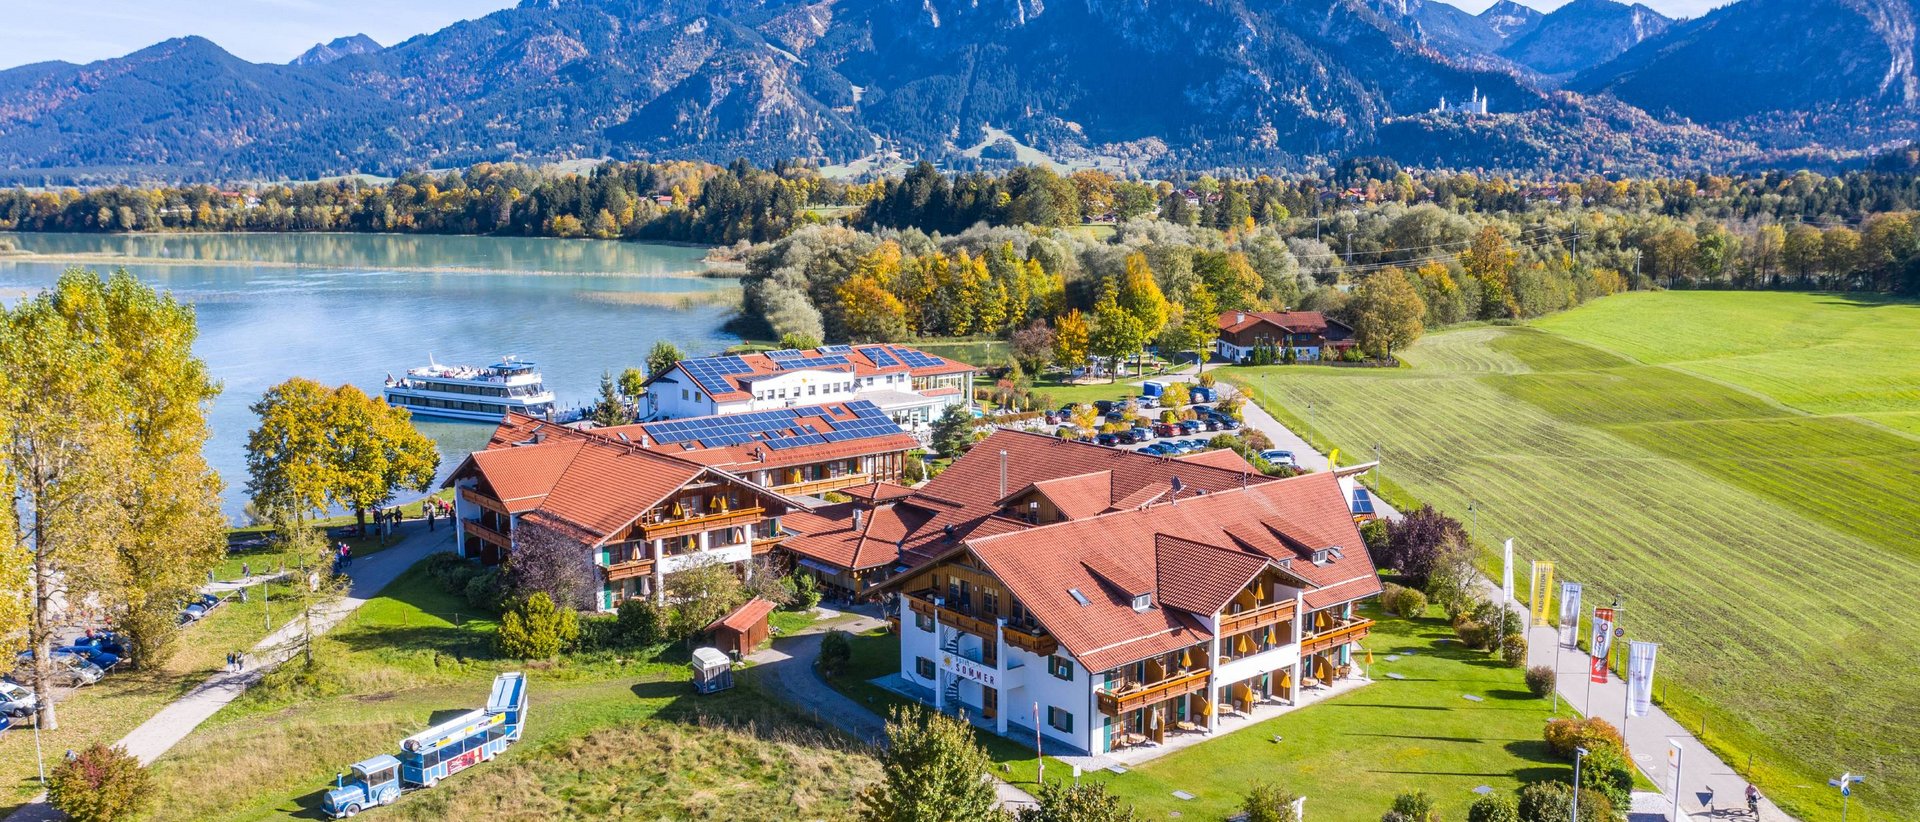 Hotel in Füssen: Allgemeine Geschäftsbedingungen